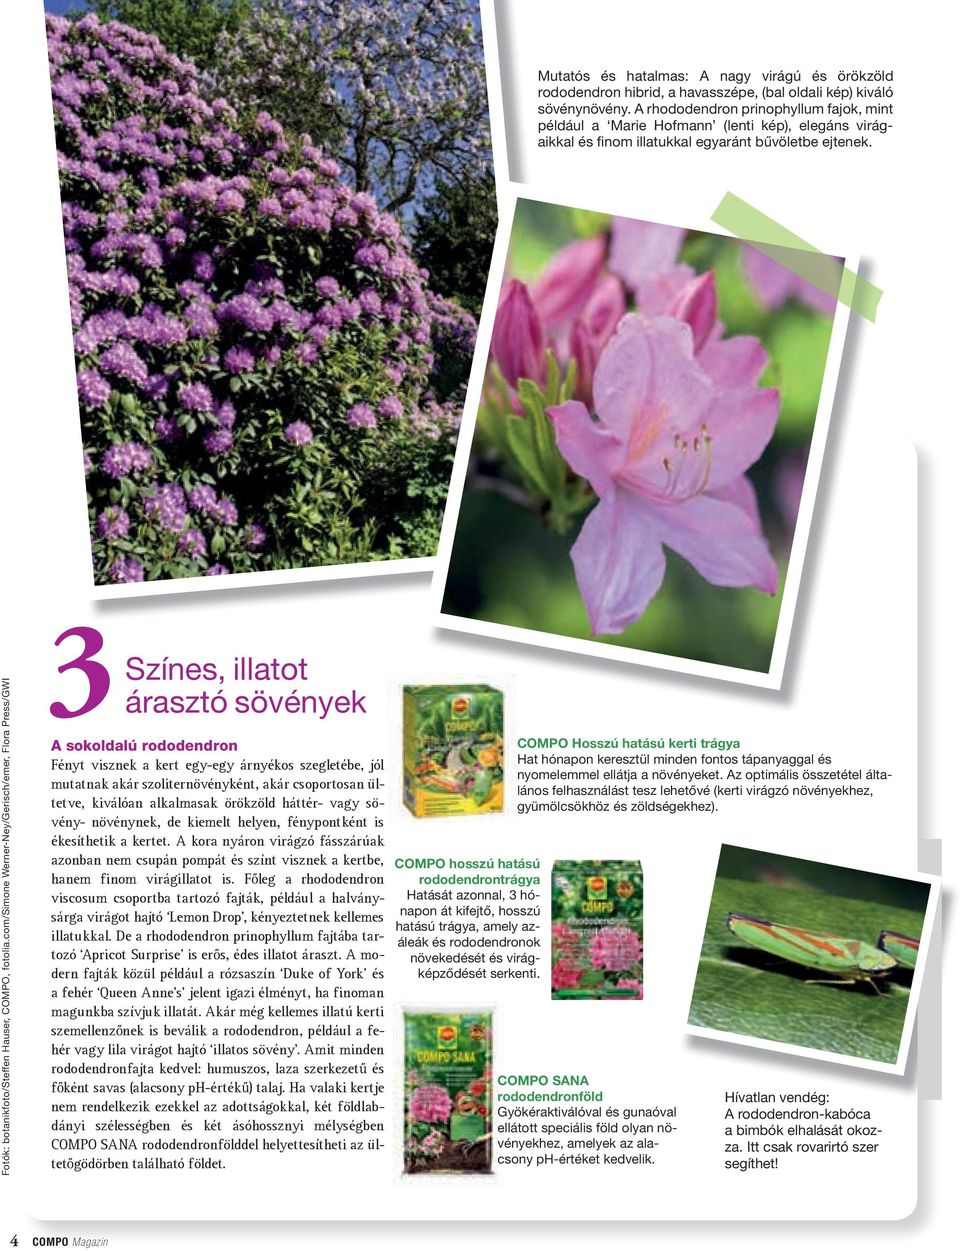 com/simone Werner-Ney/Gerisch/emer, Flora Press/GWI Színes, illatot árasztó sövények 3A sokoldalú rododendron Fényt visznek a kert egy-egy árnyékos szegletébe, jól mutatnak akár szoliternövényként,